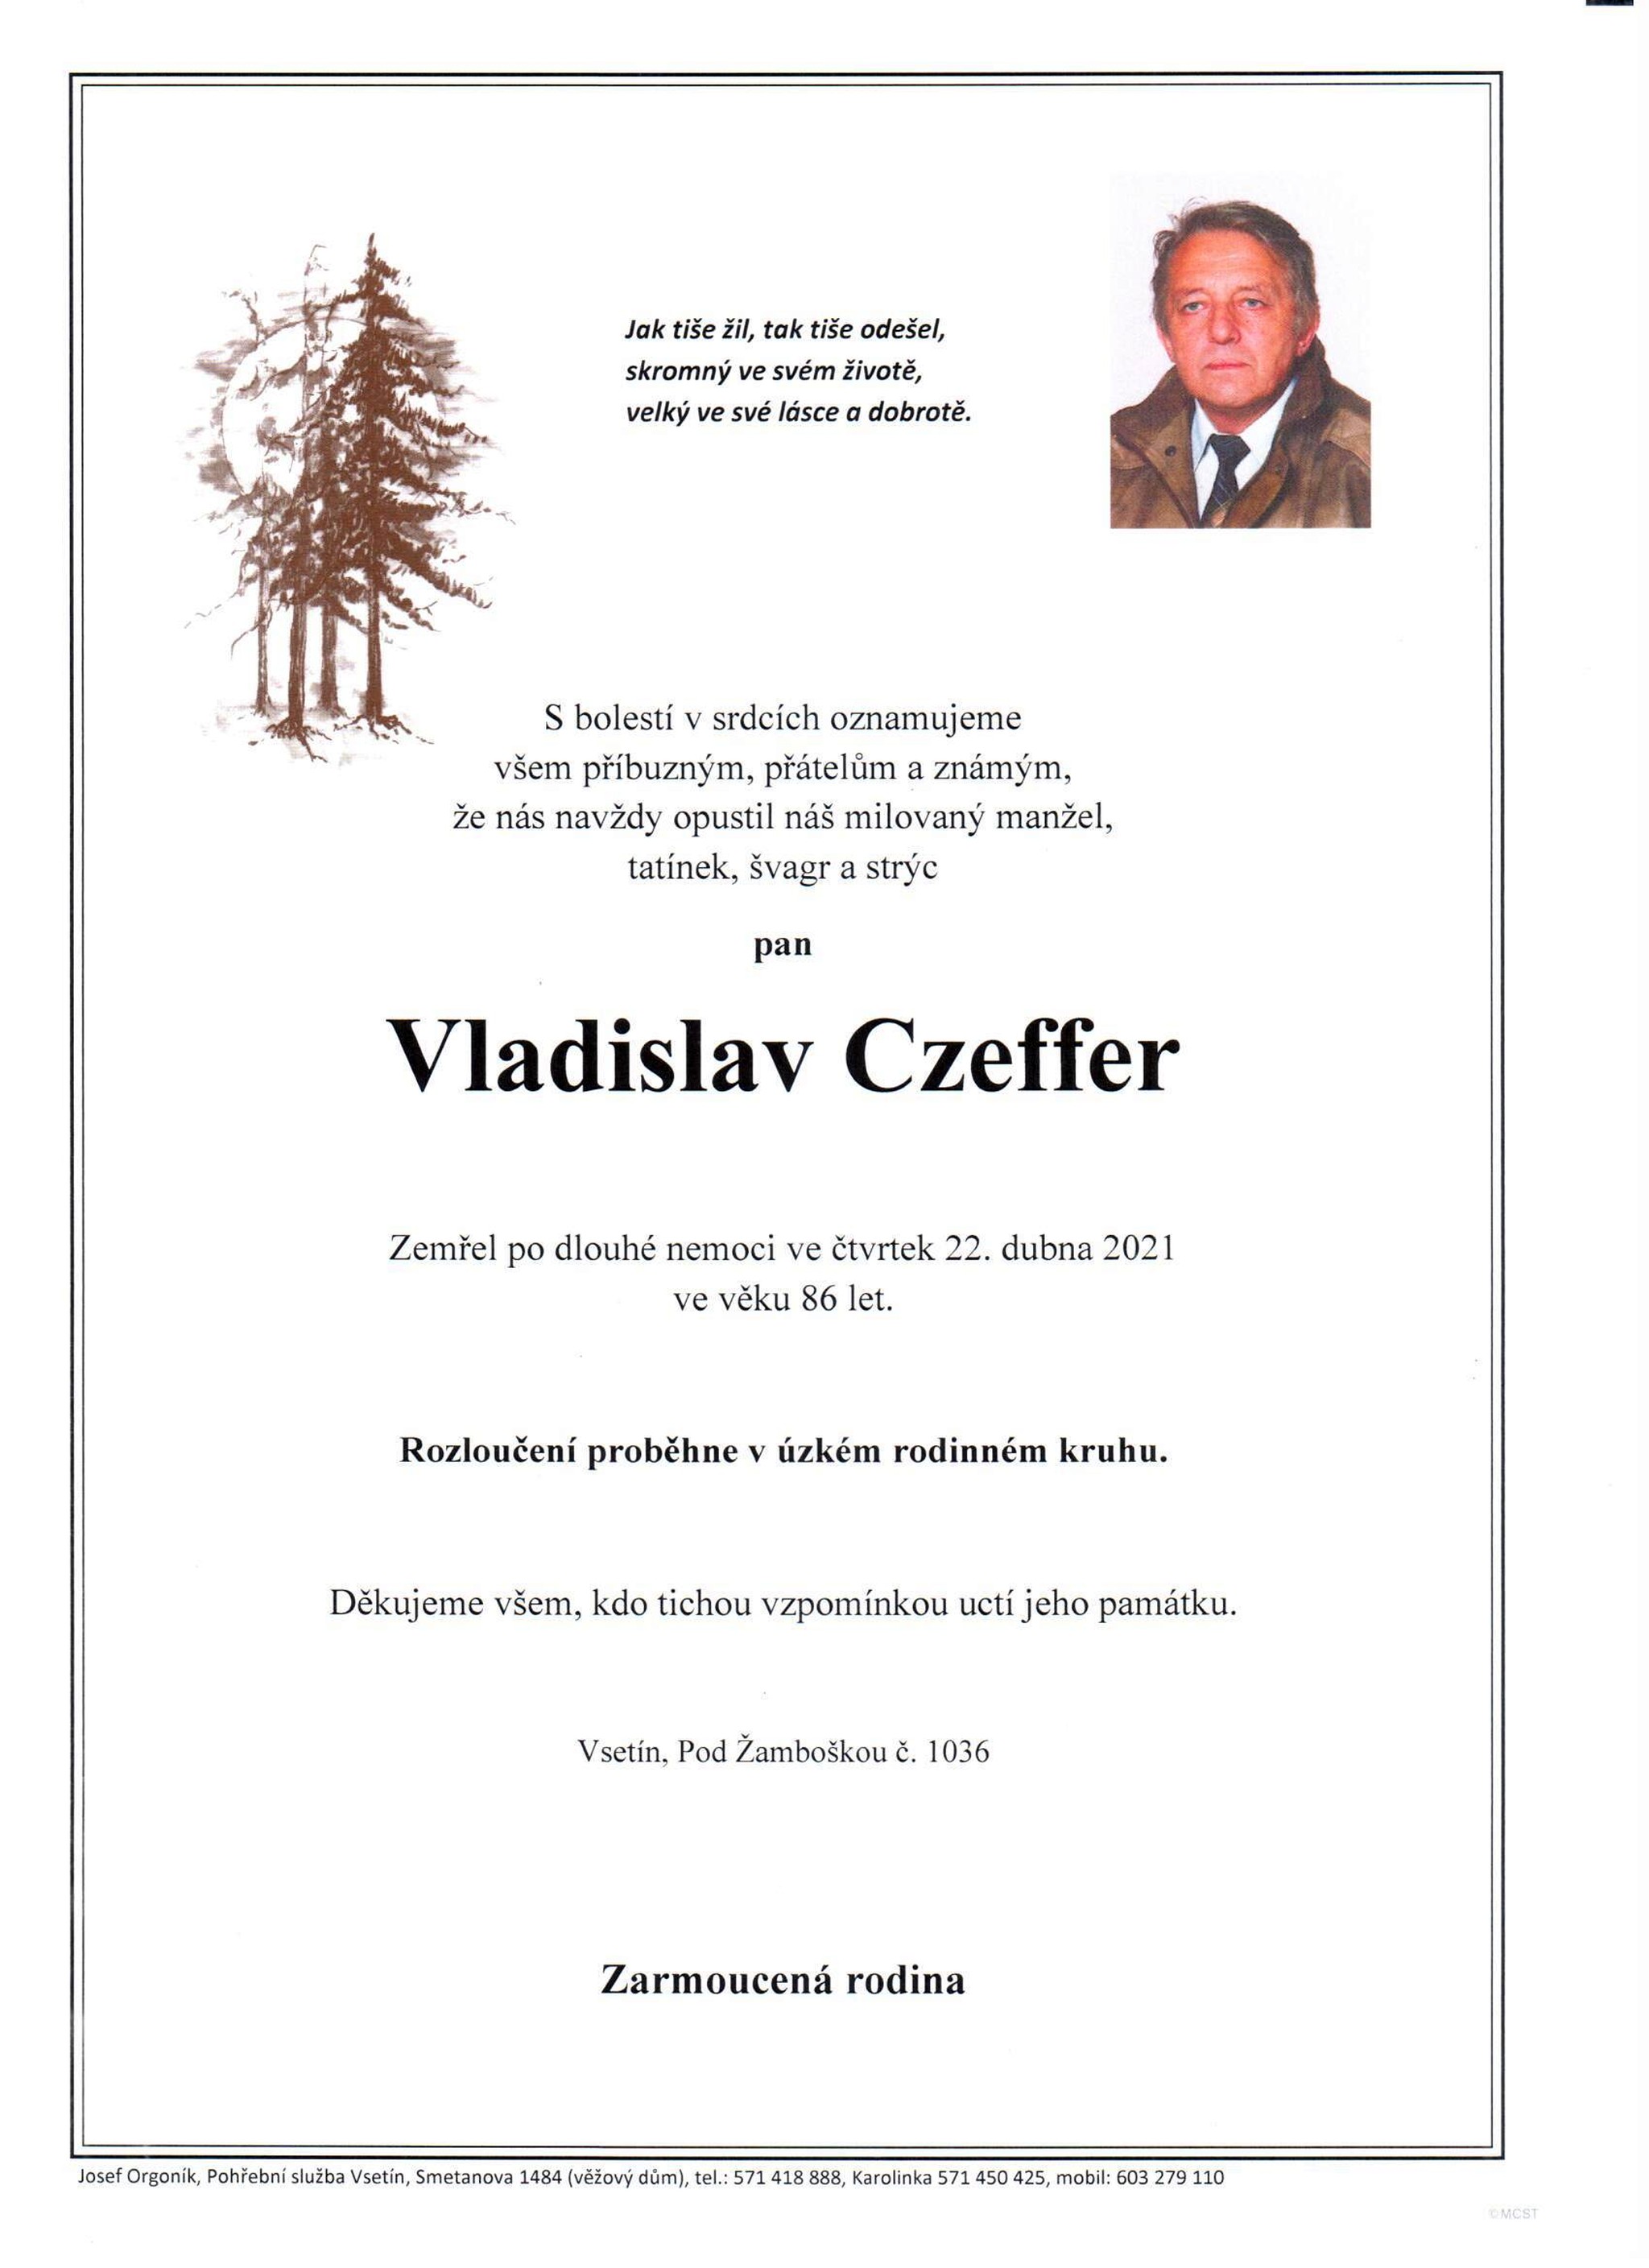 Vladislav Czeffer